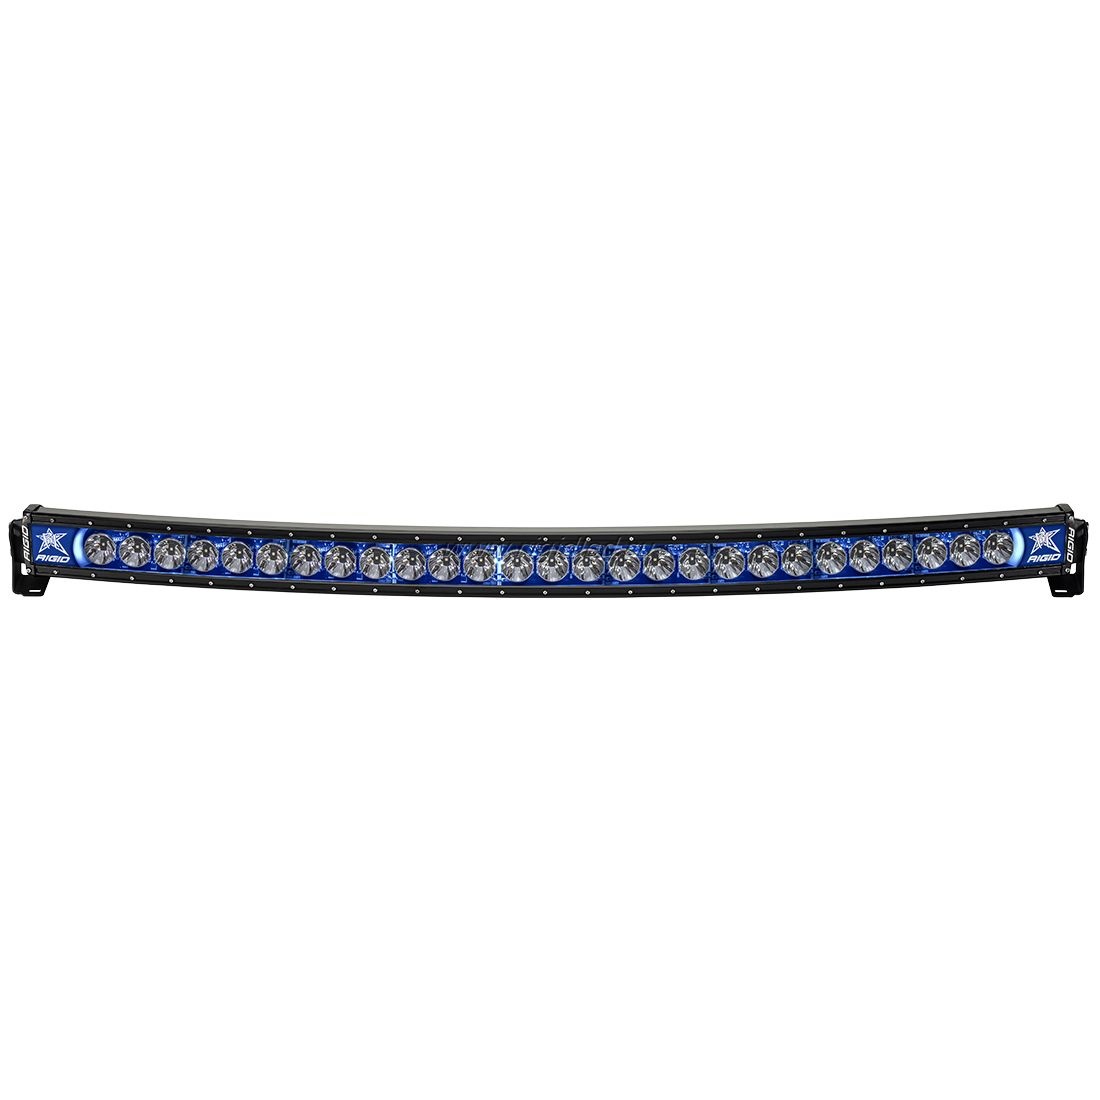 Фара RIGID 50" Radiance Curved - Синяя подсветка